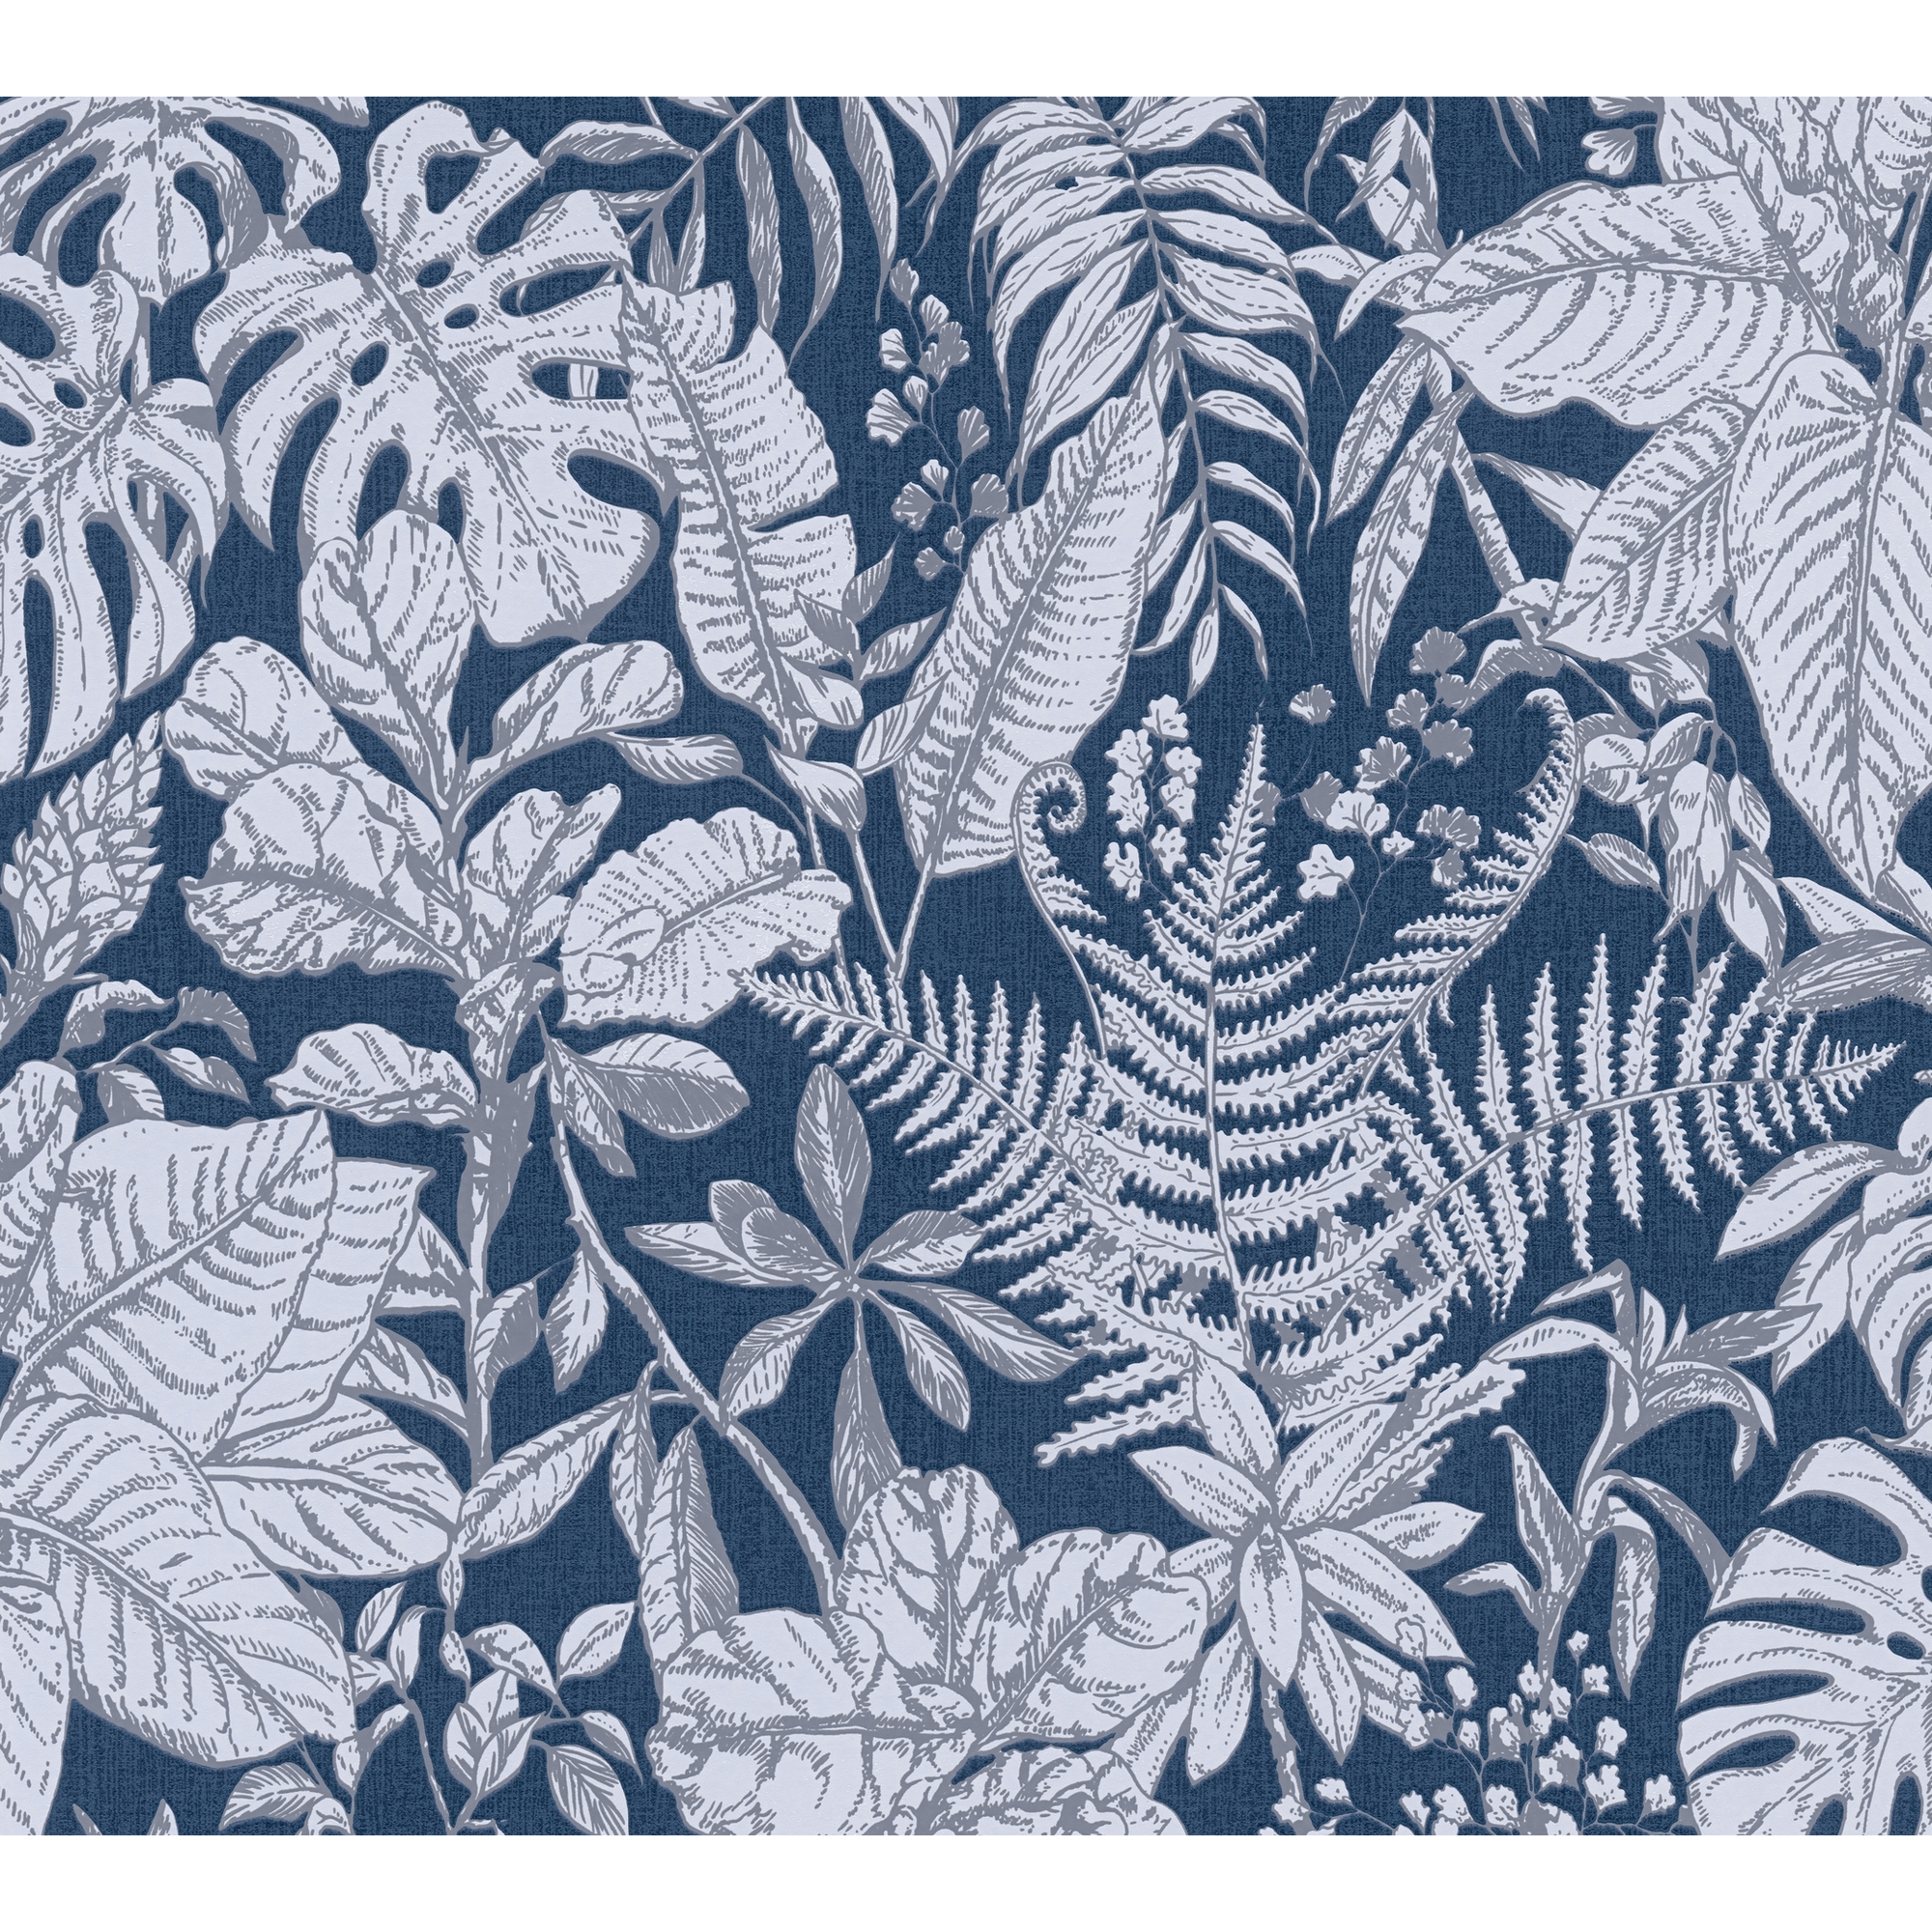 Vliestapete 'Daniel Hechter 6' Dschungel blau/weiß 53 x 1005 cm + product picture